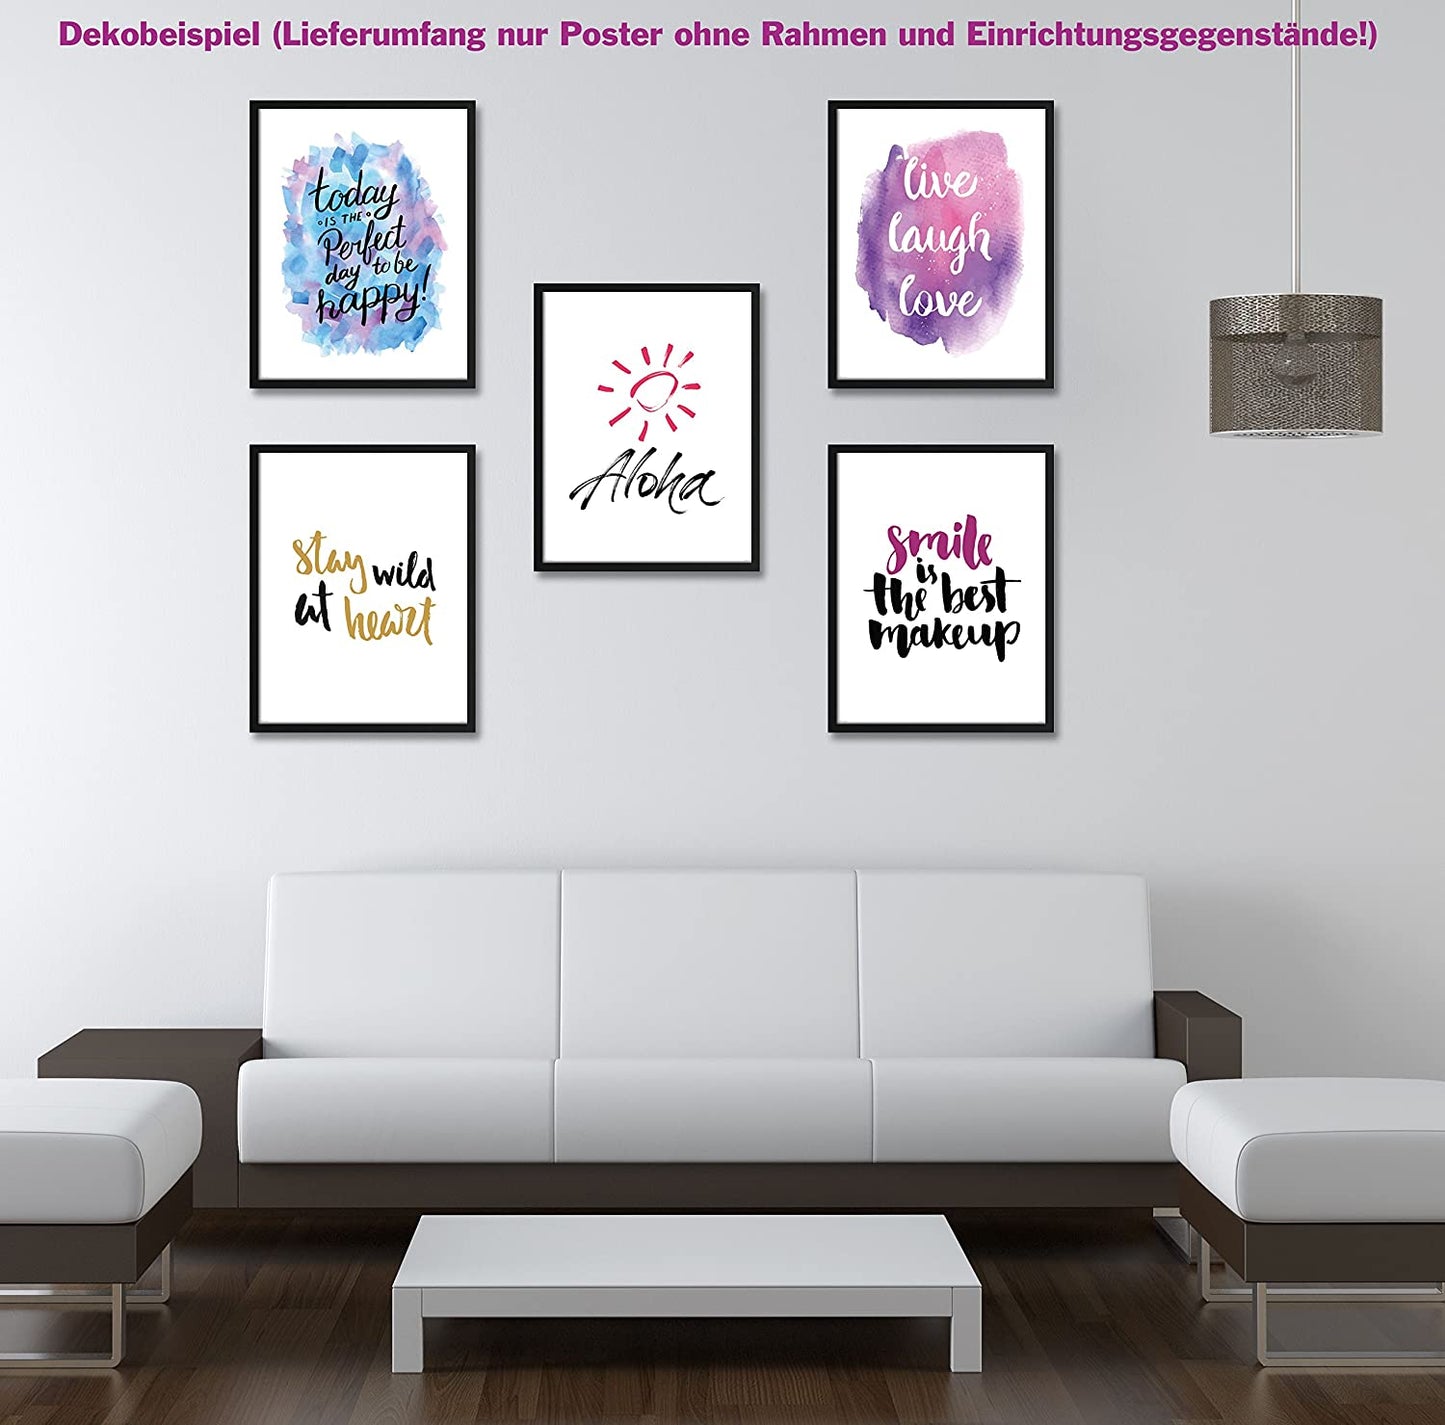 PICSonPAPER Poster 5er-Set Typo, DIN A4 oder DIN A3, Dekoration fürs Wohnzimmer oder Büro, Dekoposter, Motivation, Sprüche, Quote, Kunstdruck, Geschenk, Wandbild